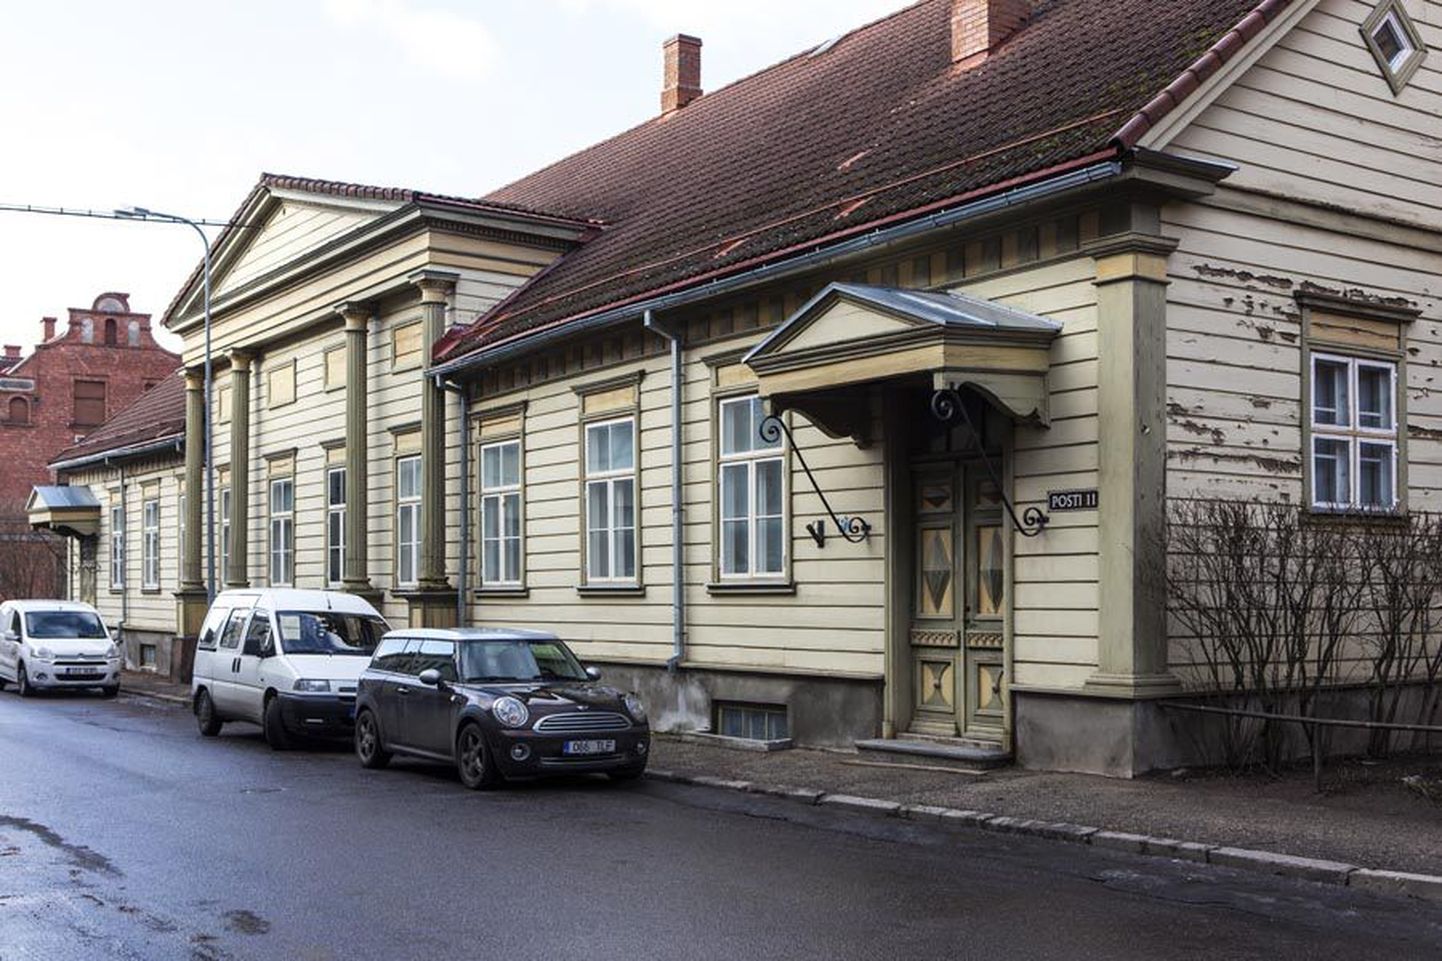 Praegu on Posti tänav 11 maja küll tühi, kuid juba augustis võib sinna Männimäelt kolida Viljandi kunstikool. Uut õppeaastat on ruumides plaanis alustada septembrist.